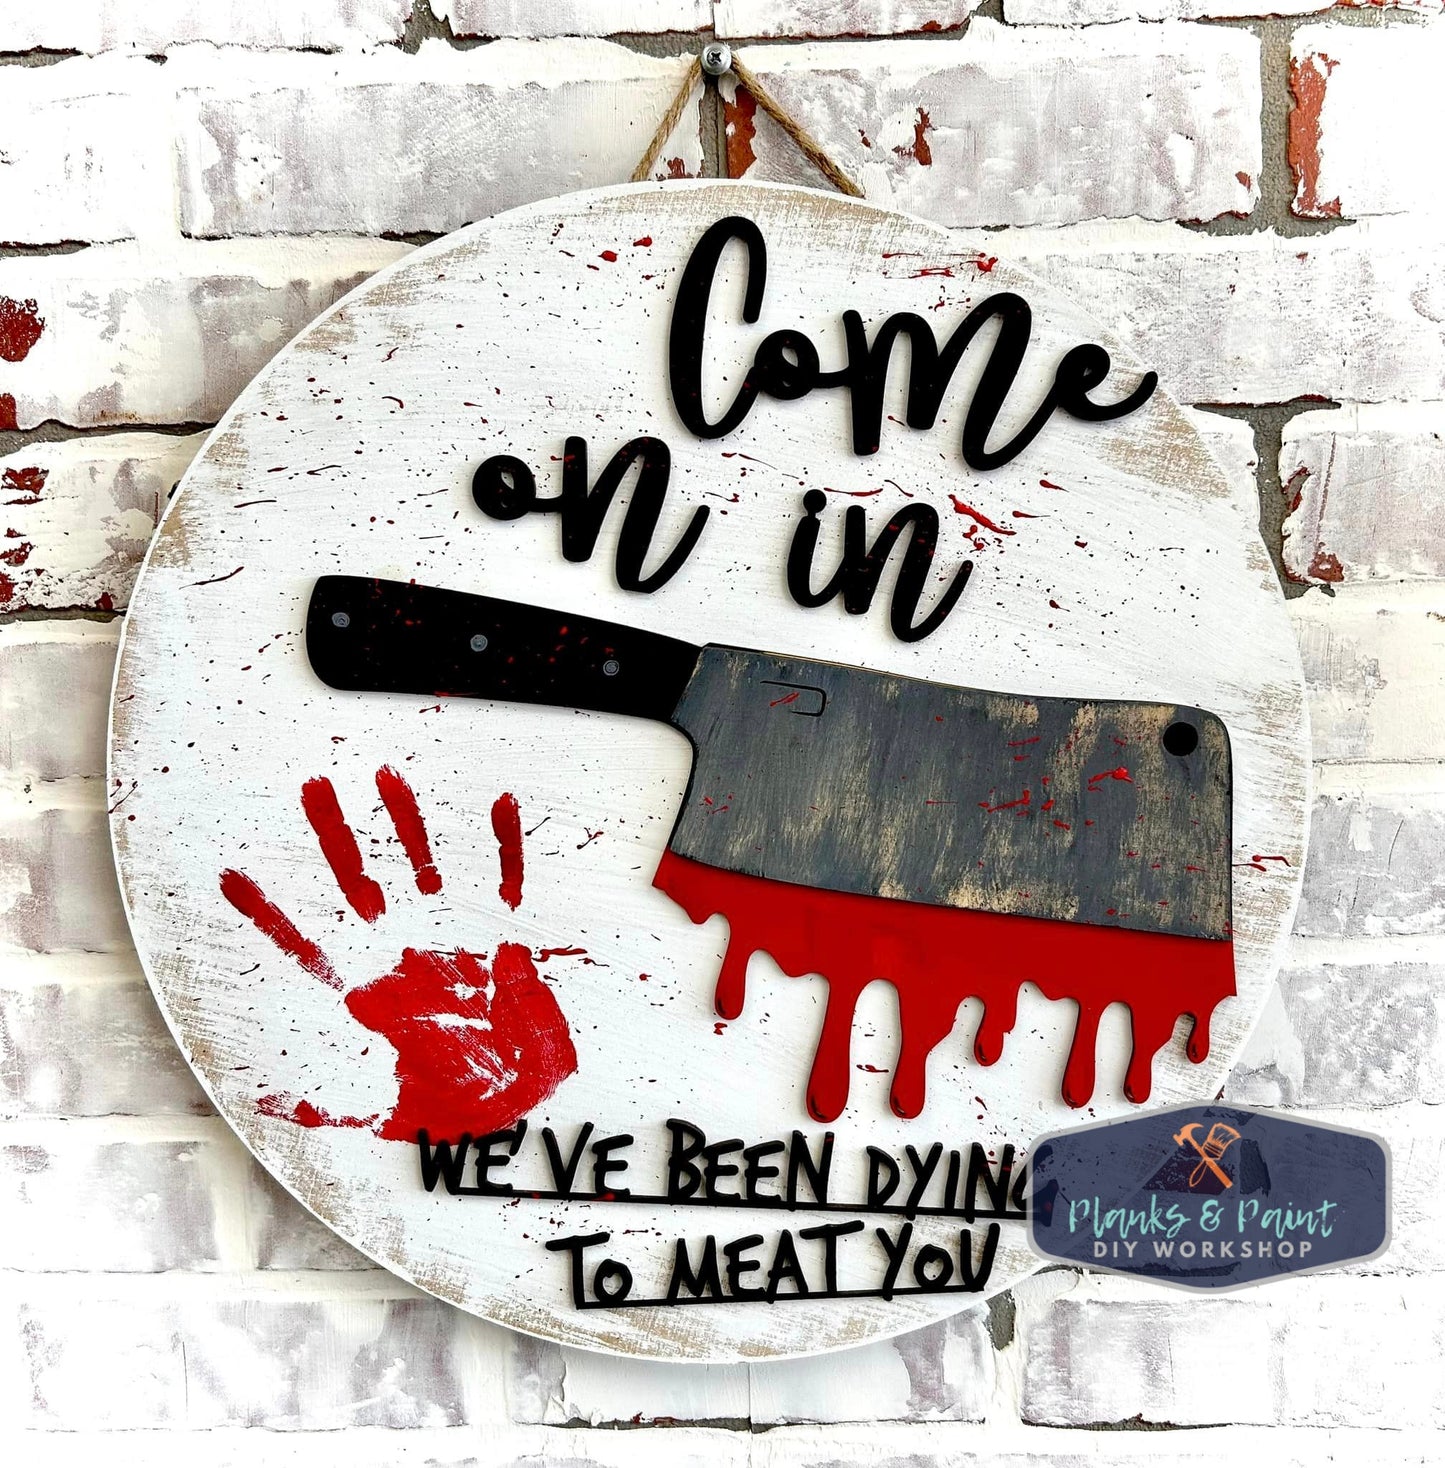 Come In Dying to Meat You 20" 3D Door Hanger HA405